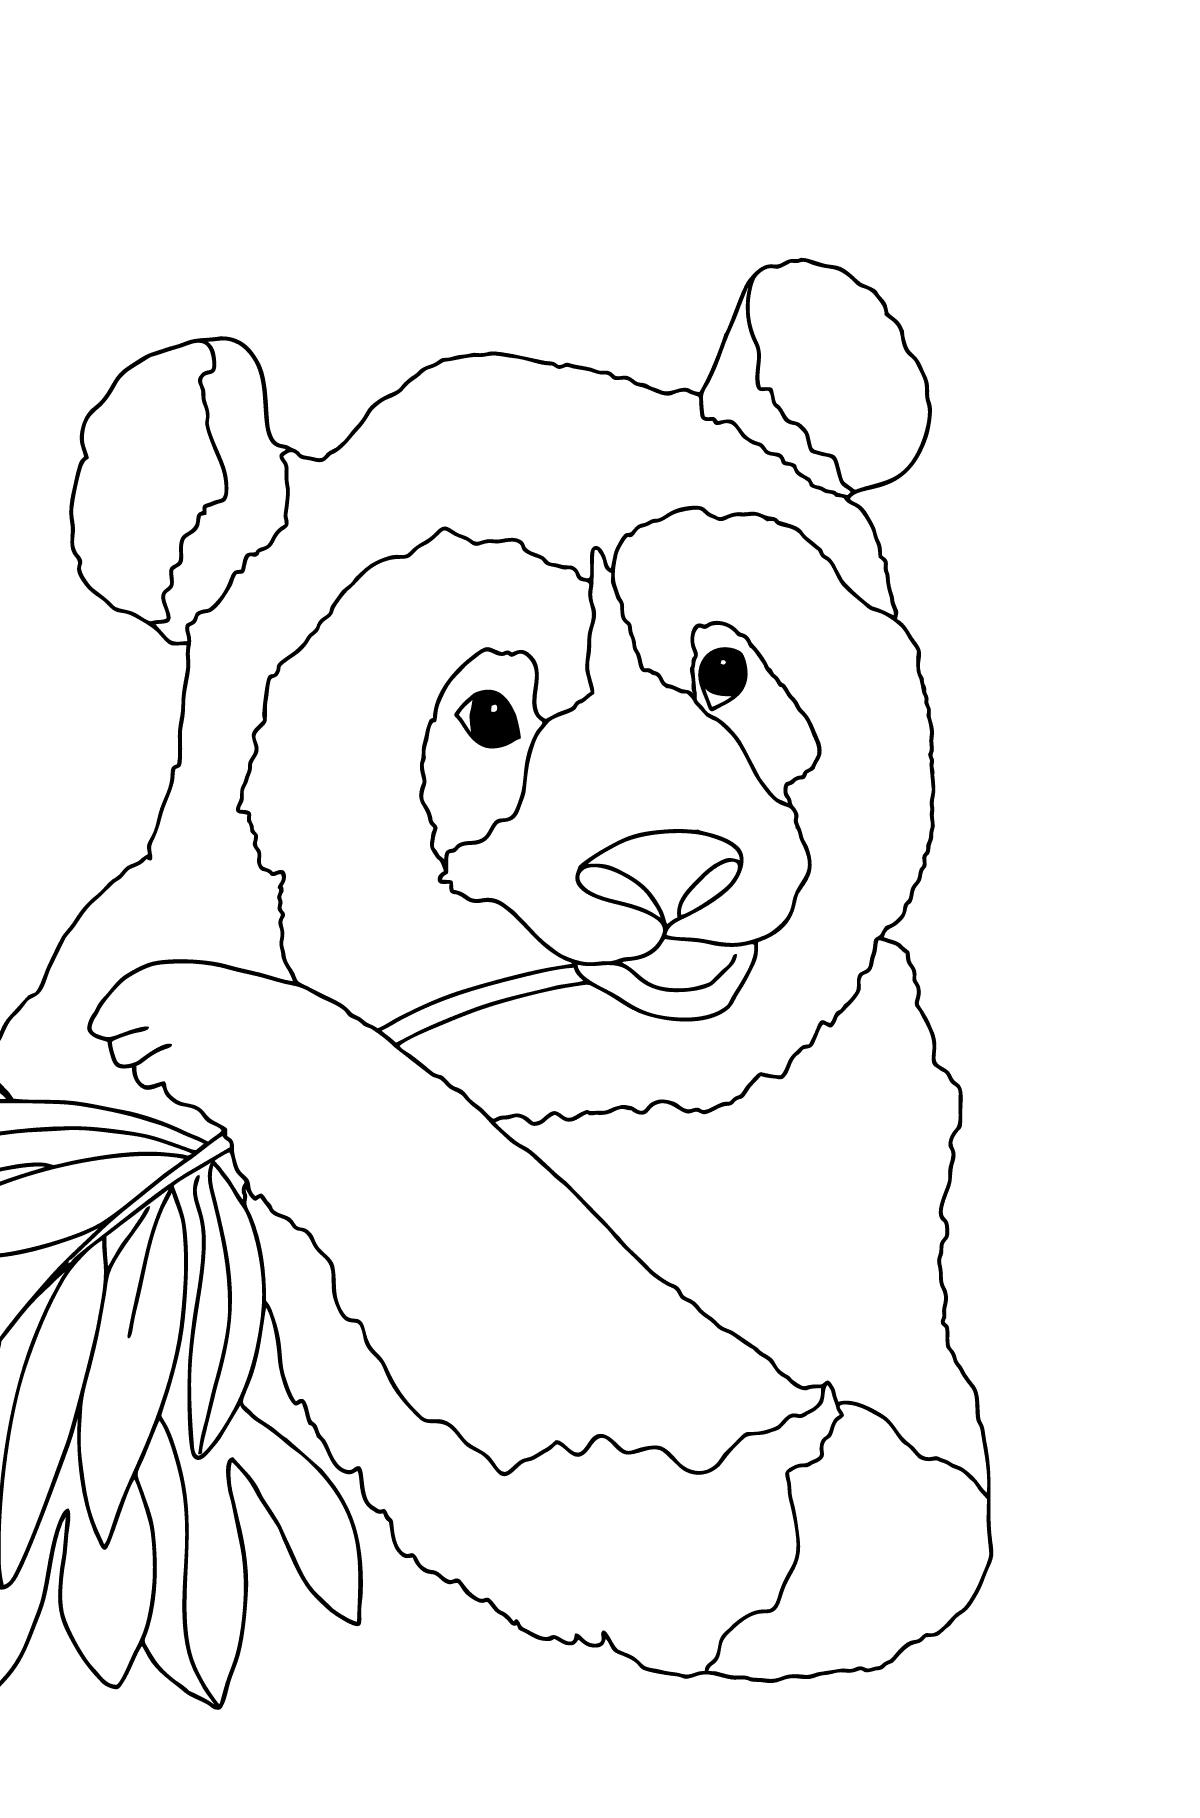 Boyama sayfası güzel panda (zor) - Boyamalar çocuklar için